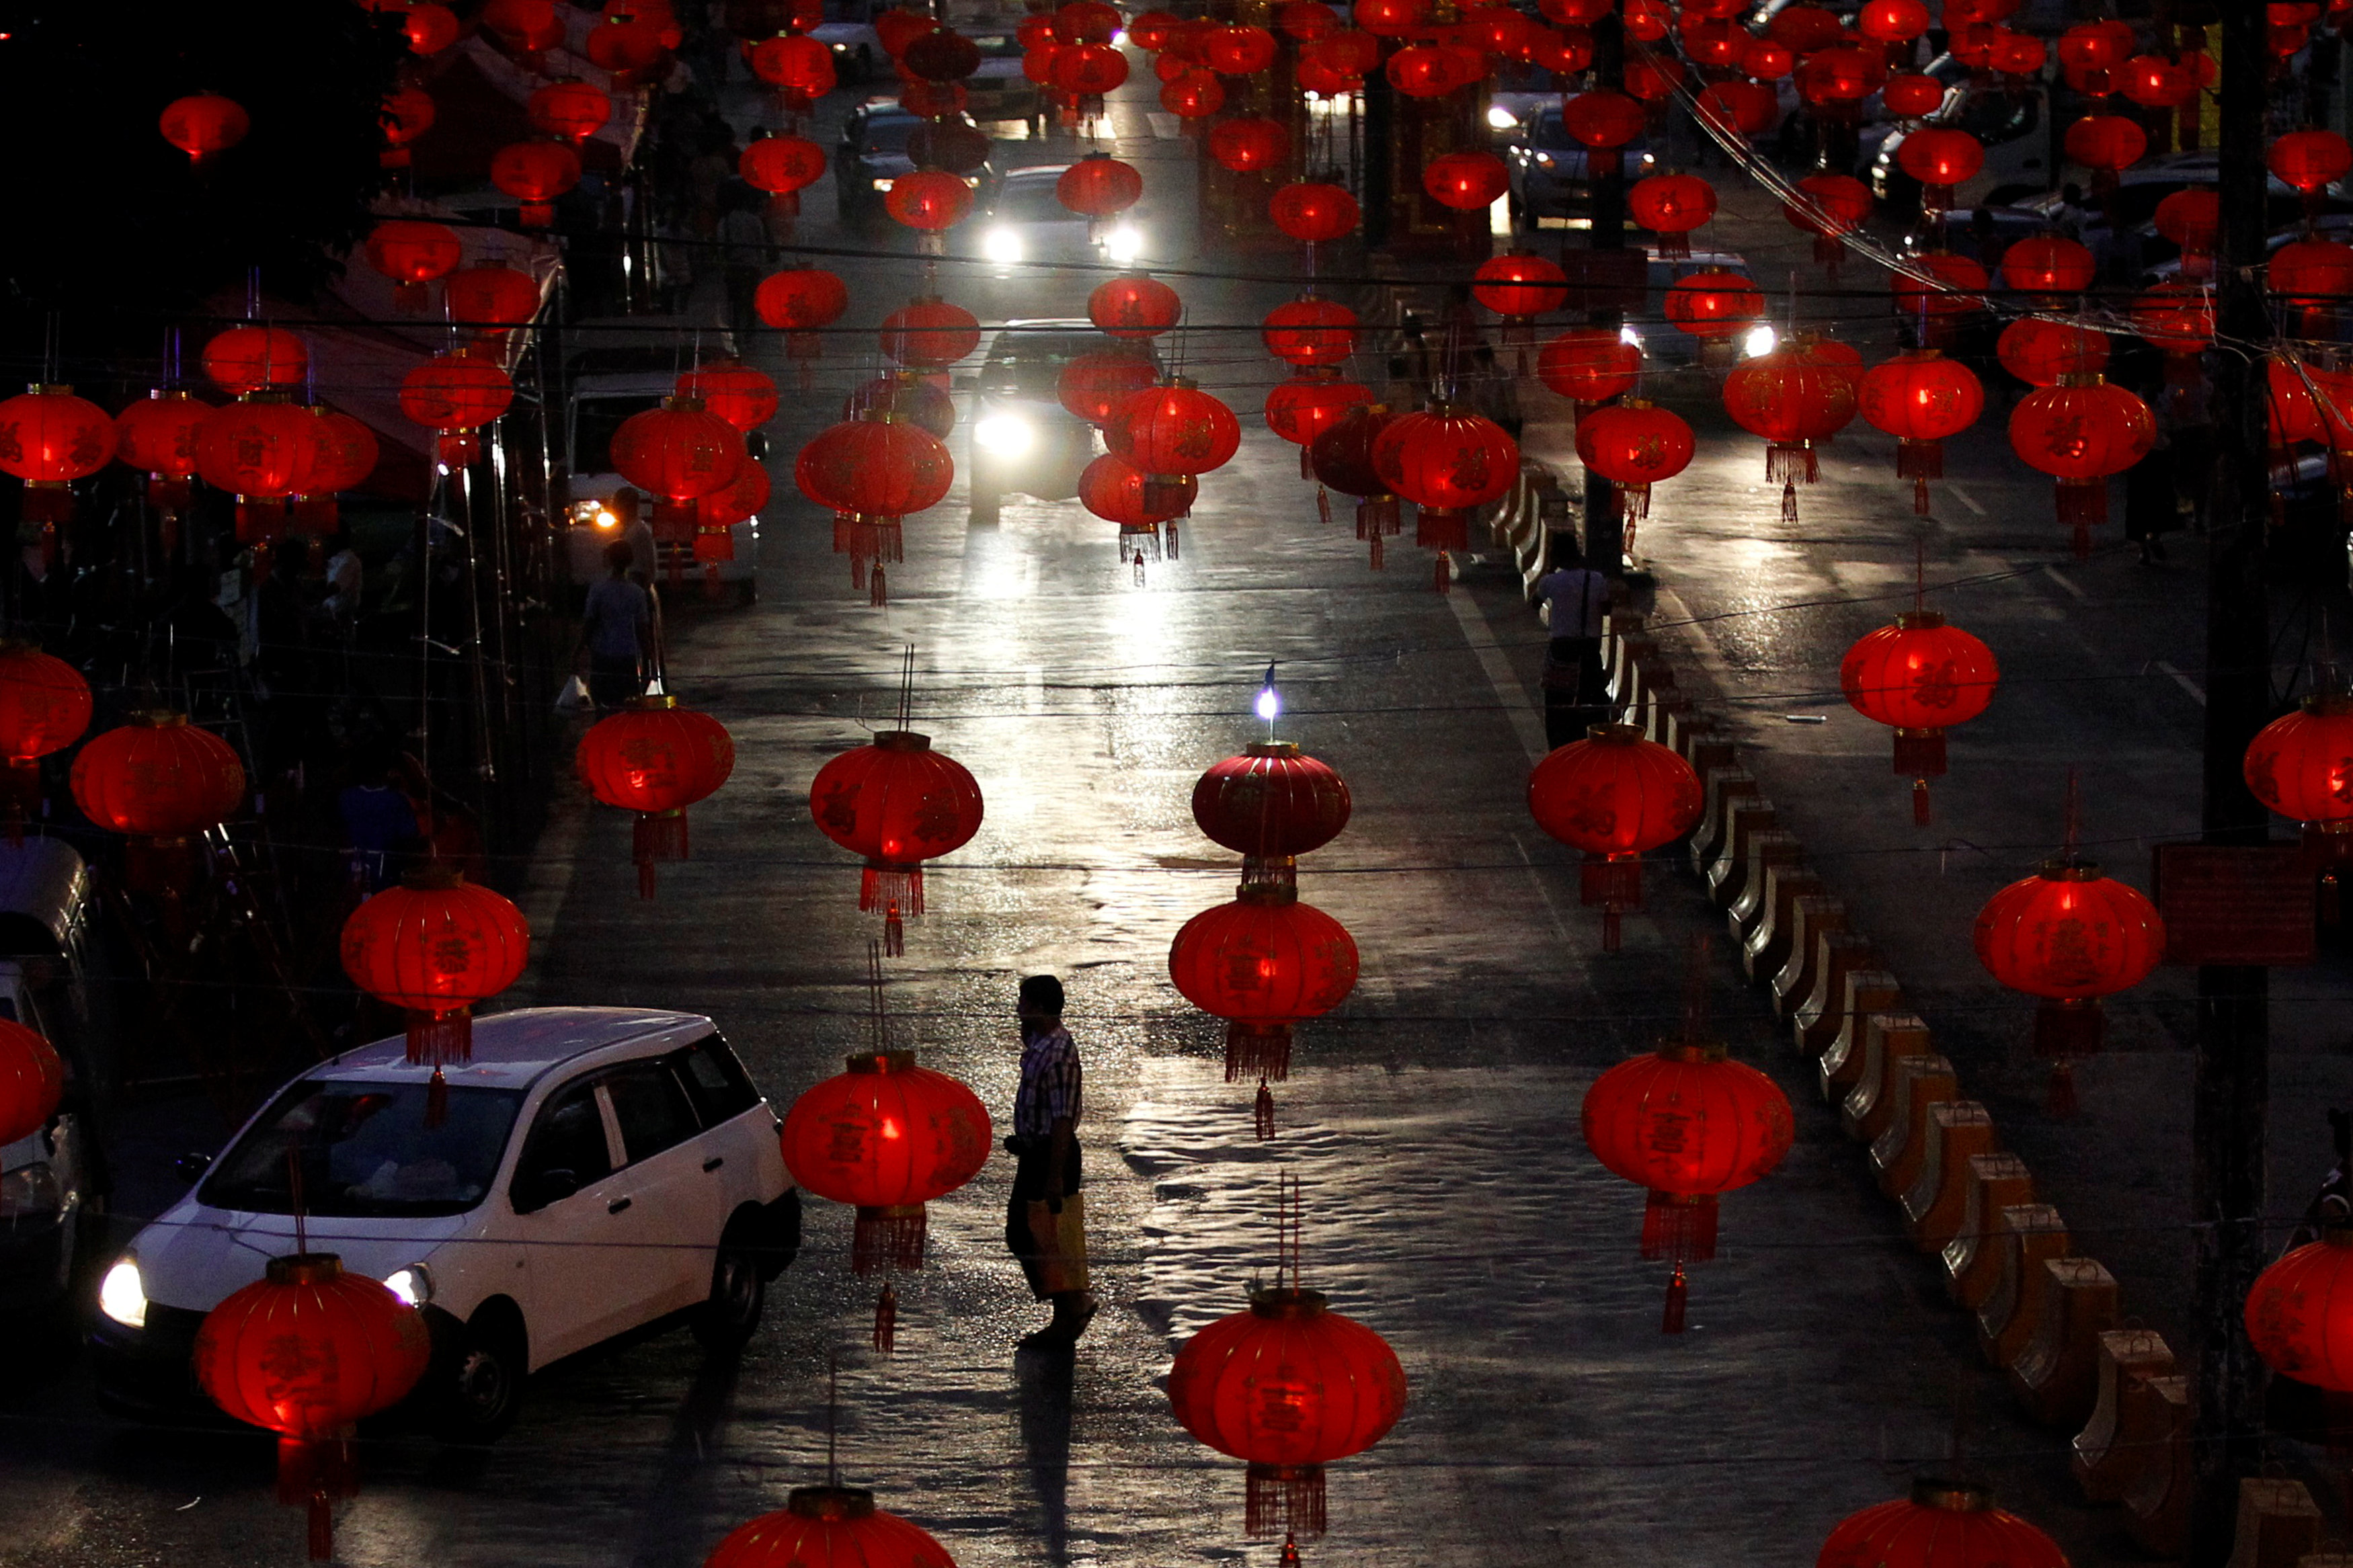 المصابيح الصينية فى شوارع يانجون